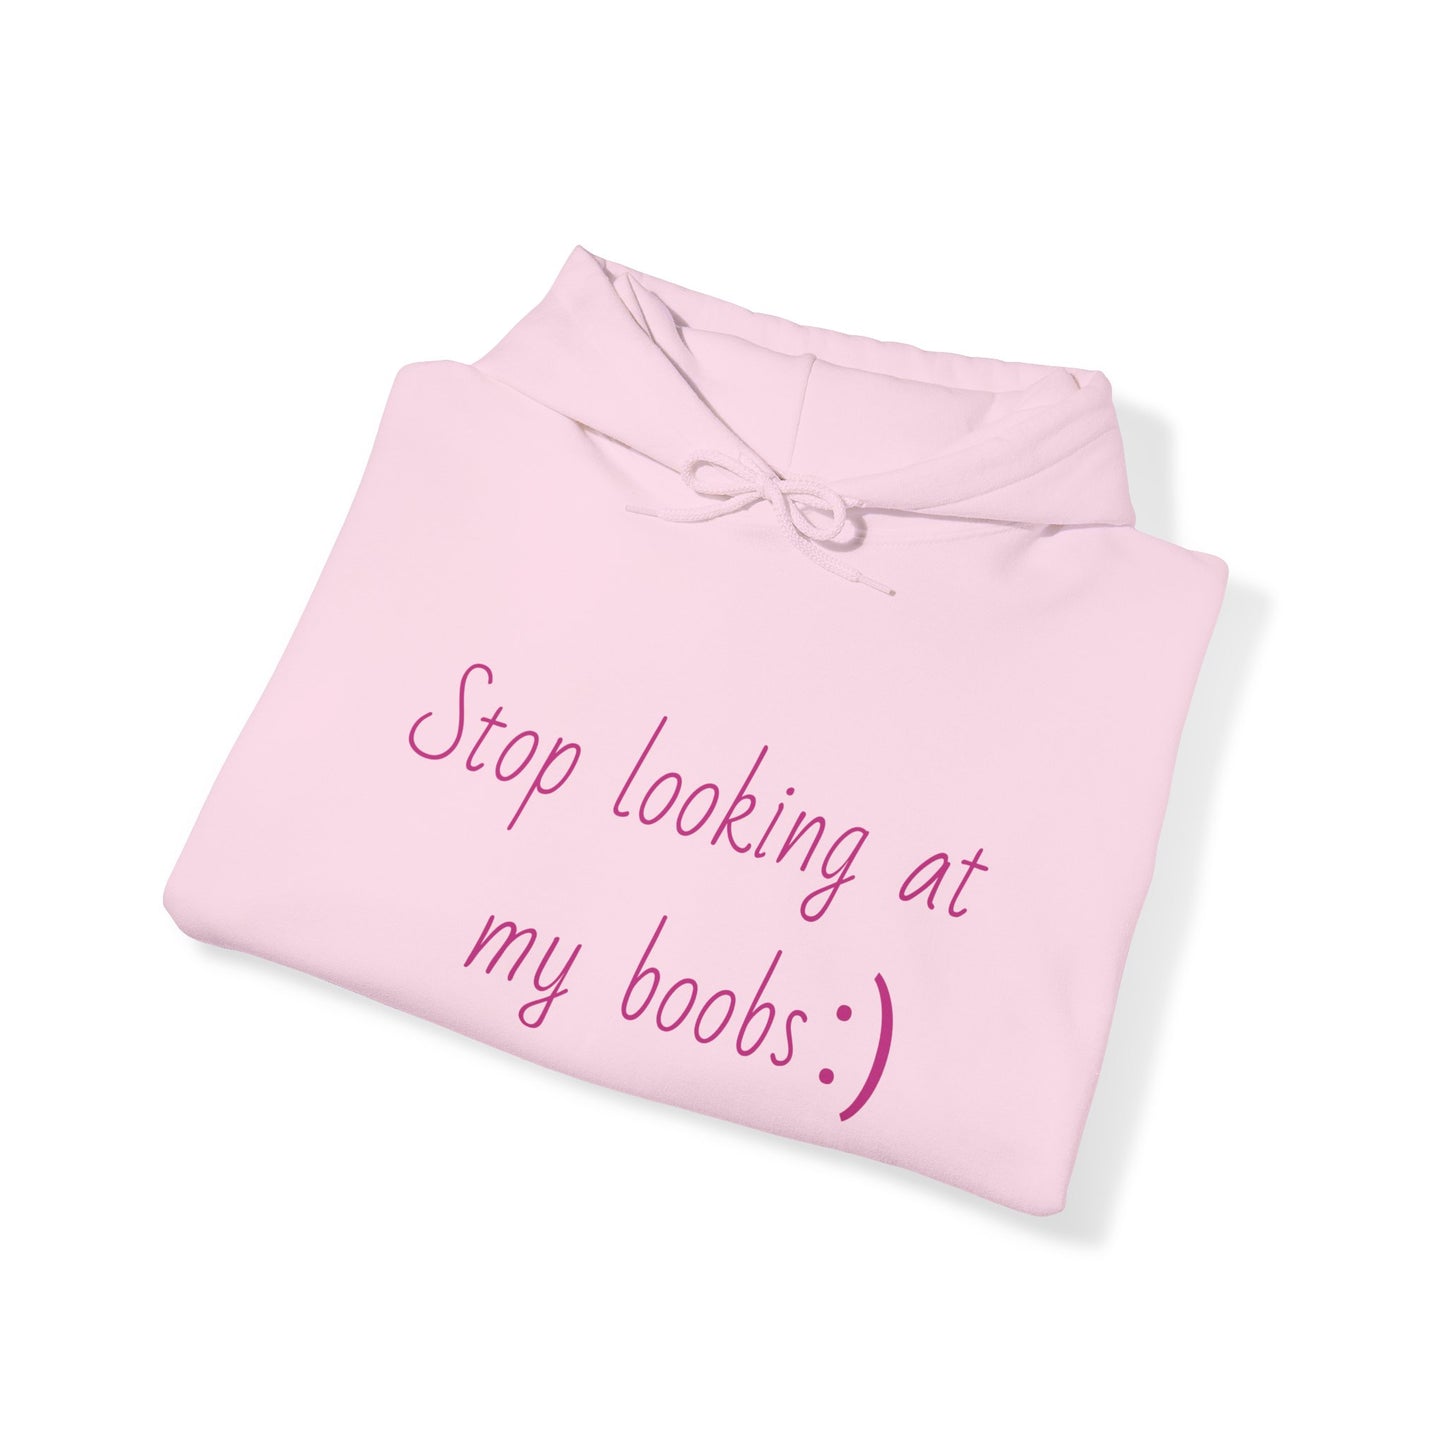 "Stop looking at my boobs :)" - Hoodie